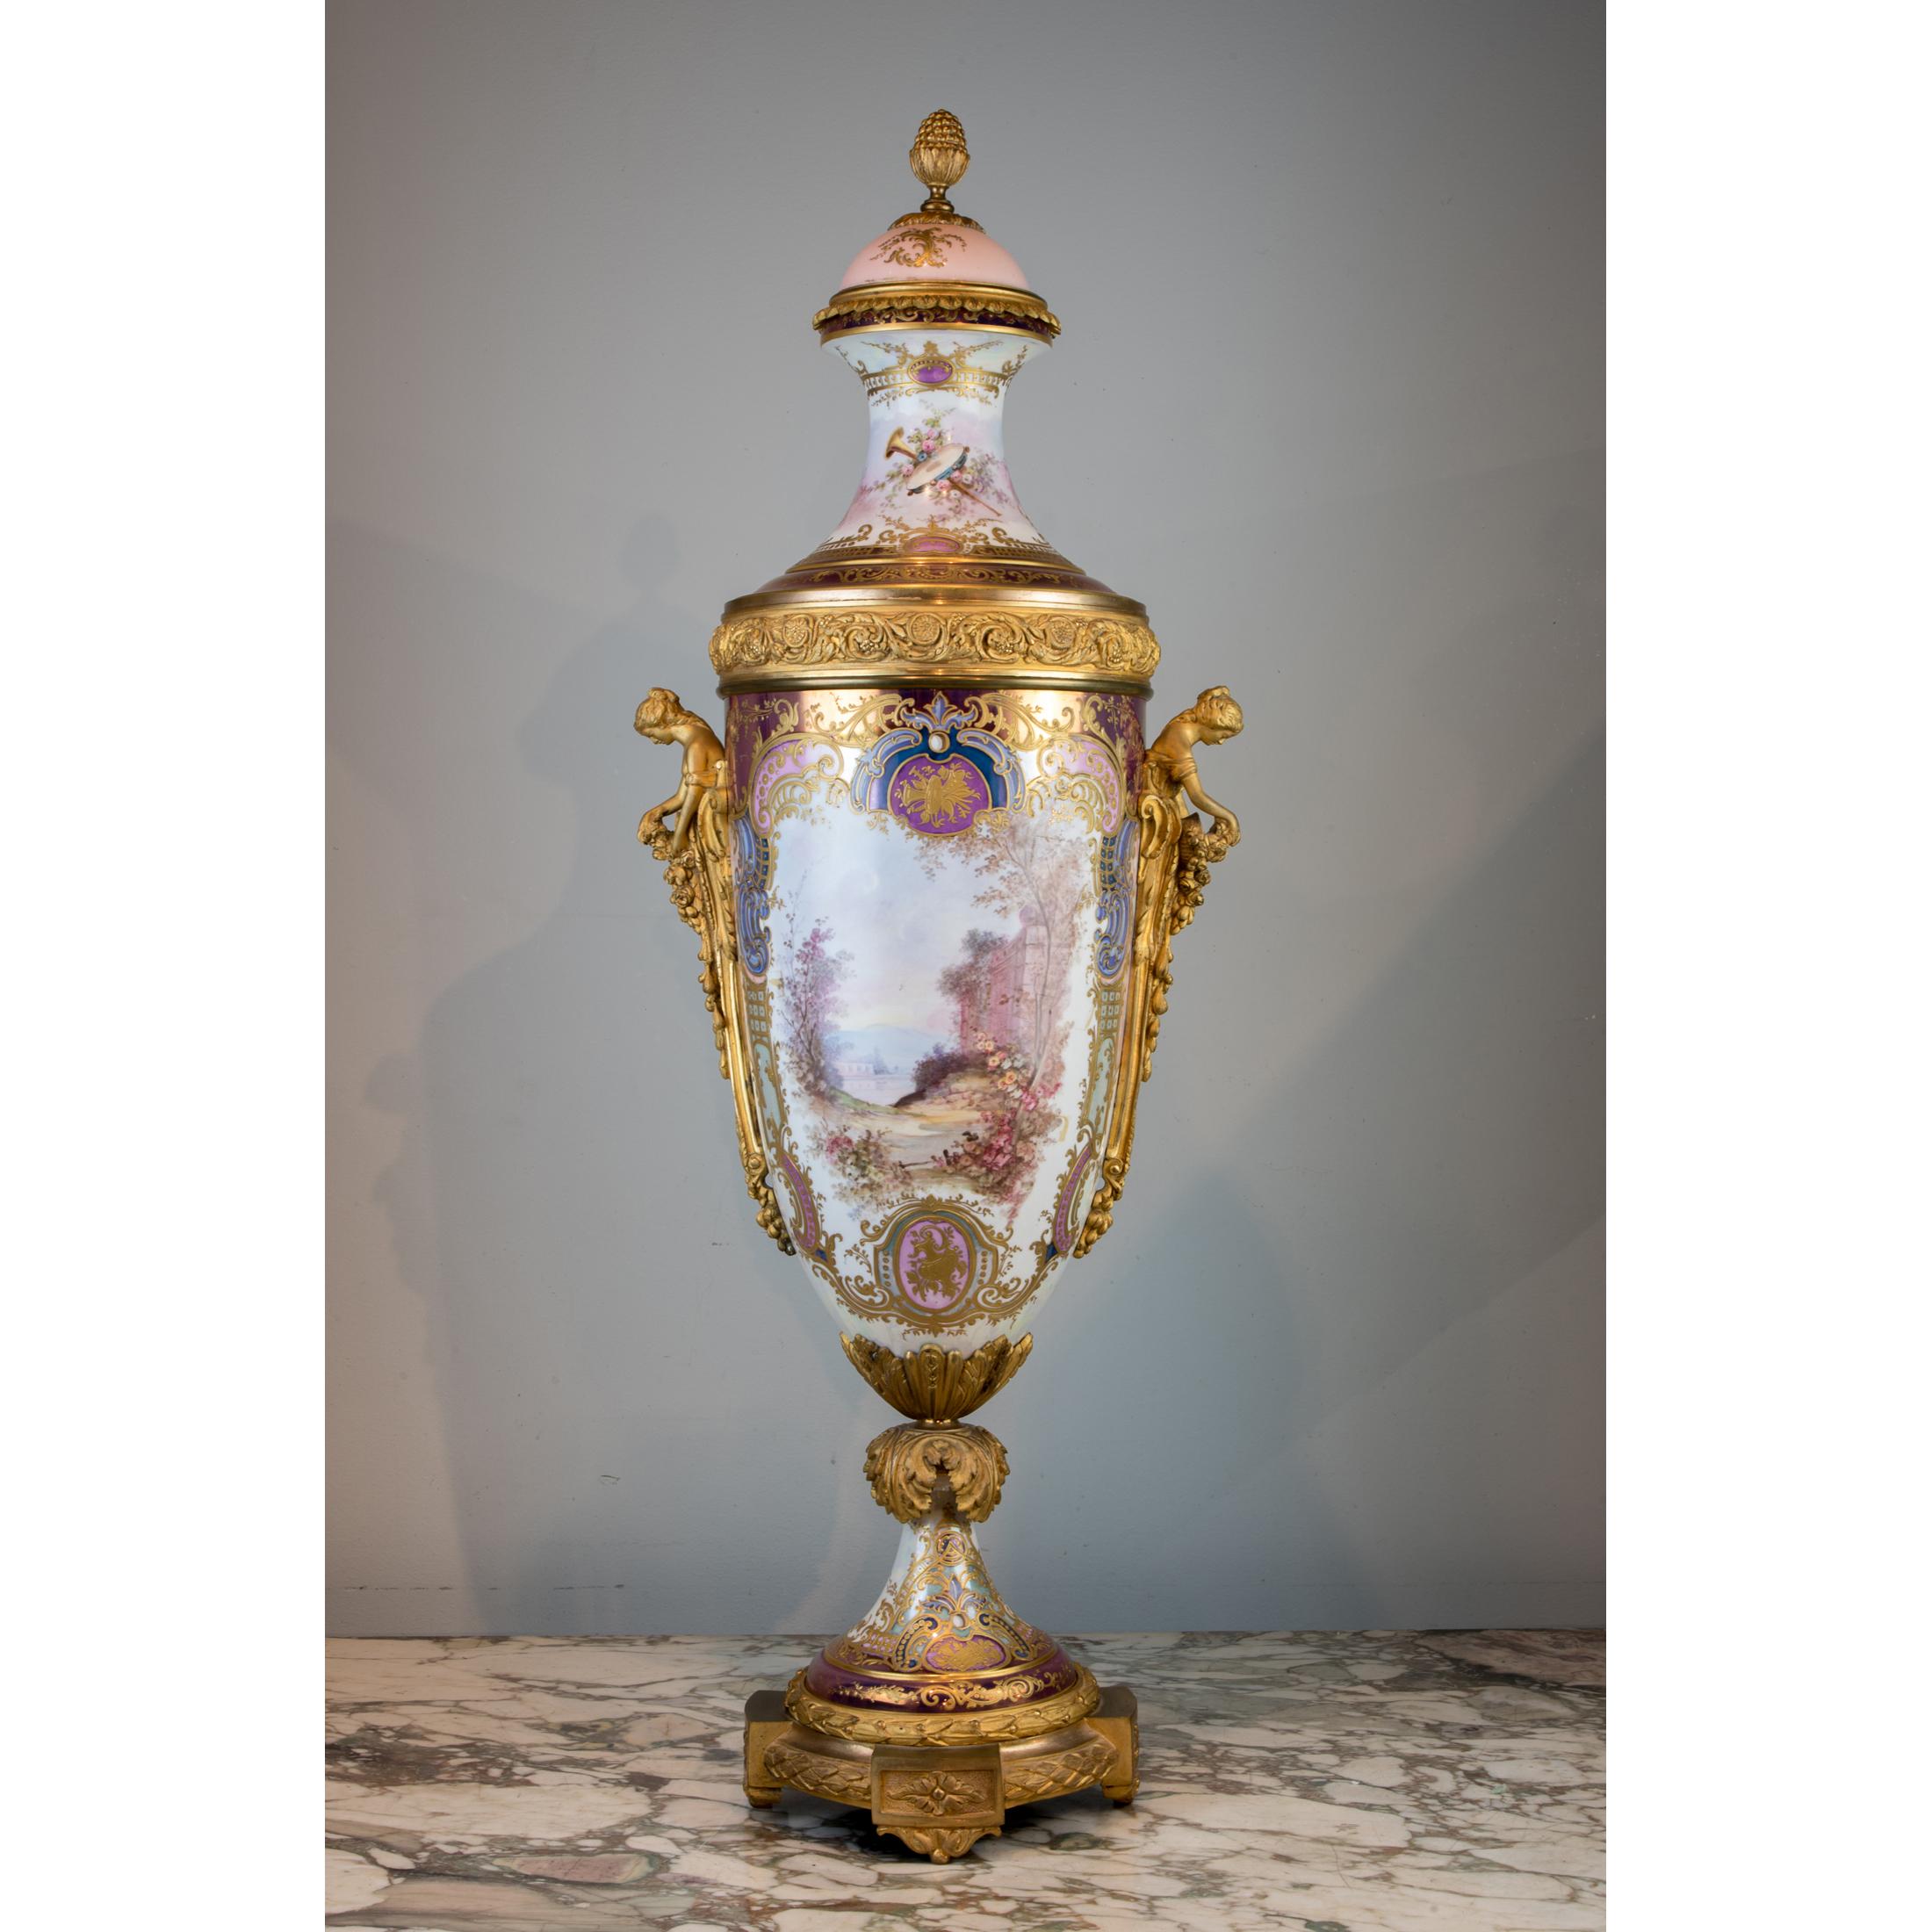 L'étonnant vase portrait de style Sèvres en porcelaine à glaçure irisée rose, monté en relief et en bronze doré, peint d'une belle femme avec Cupidon. 

Date : 19ème siècle
Origine : Français
Dimension : 34 po. x 12 po.